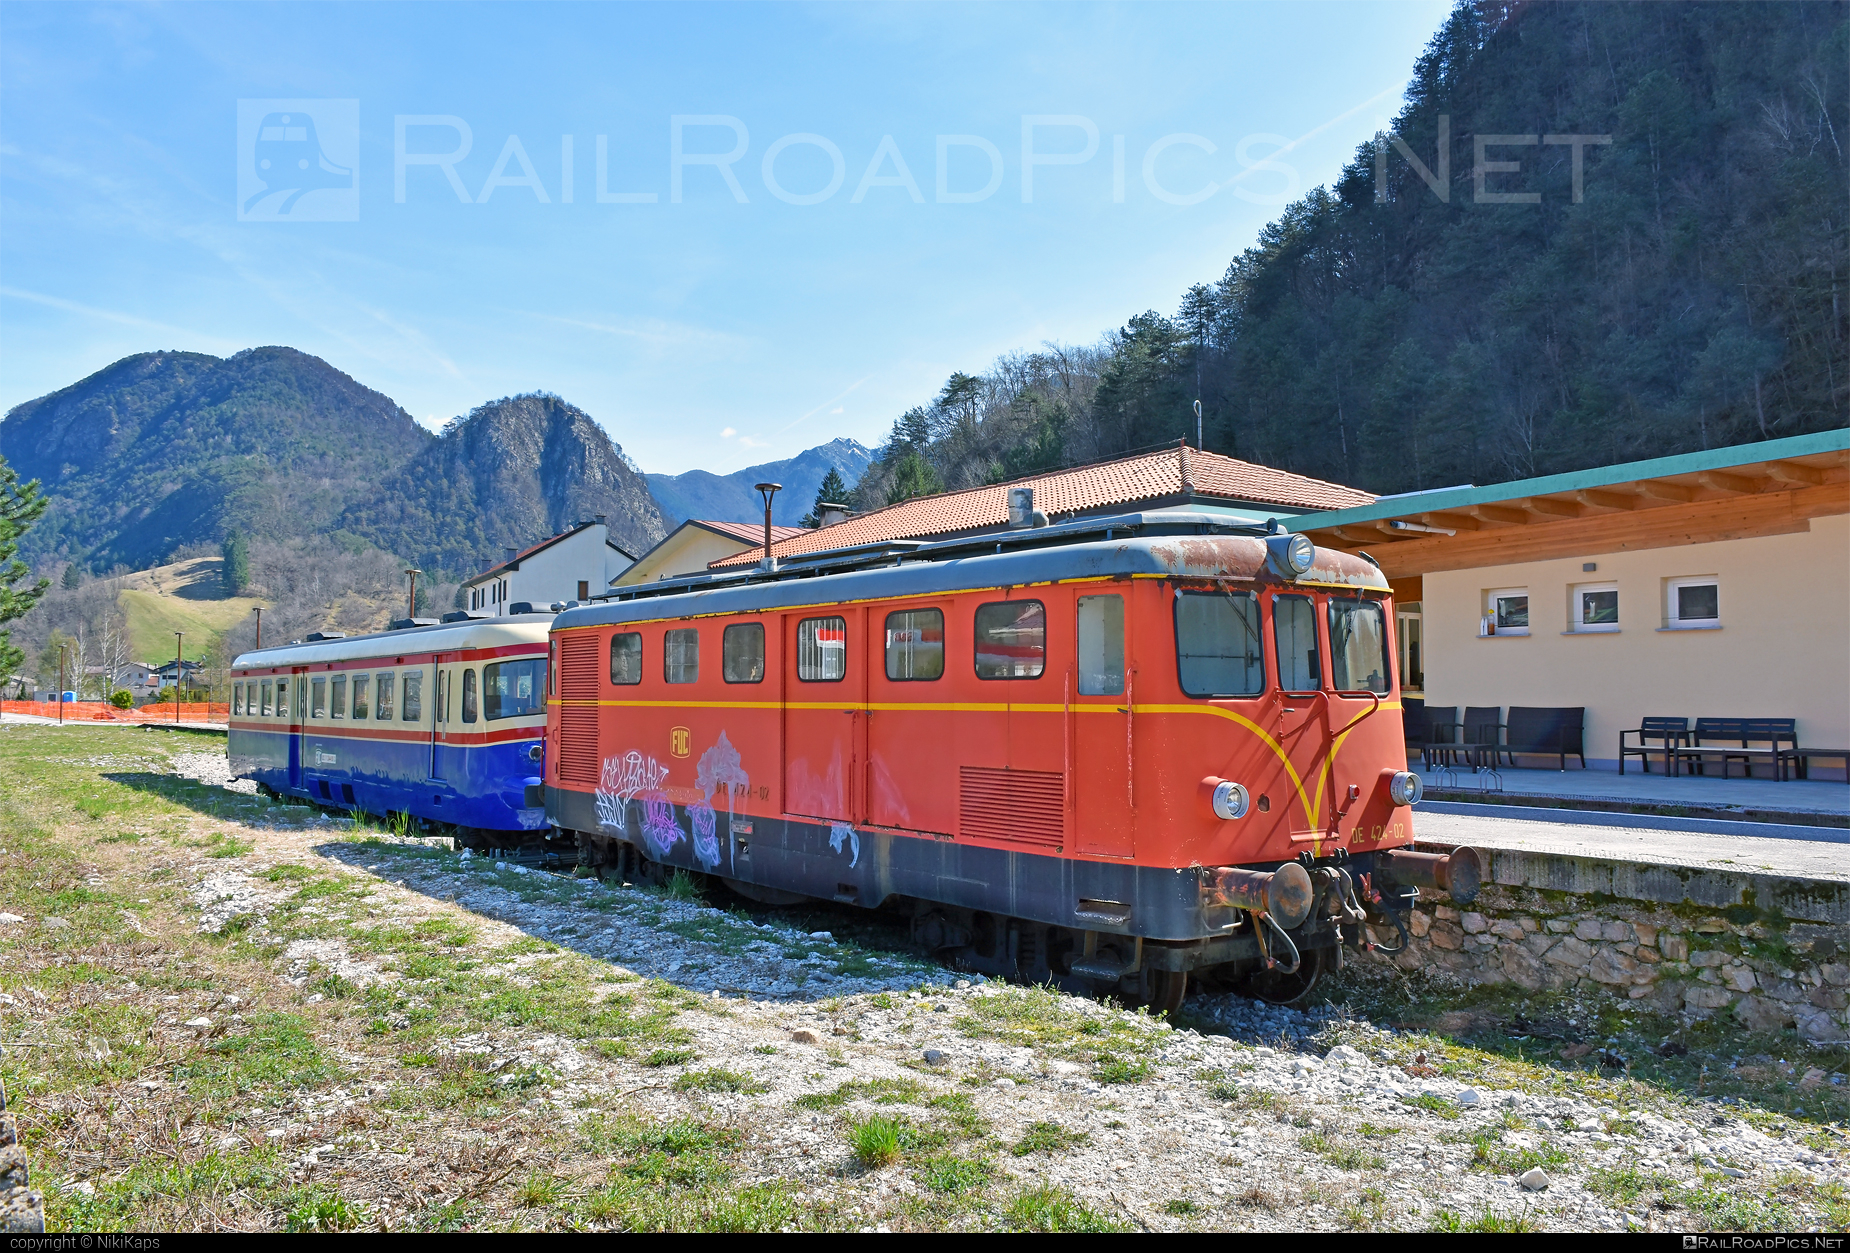 SV Class DE.424 - DE 424-02 operated by Società Ferrovie Udine Cividale #de424 #fuc #graffiti #svClassDe424 #tibbDe424